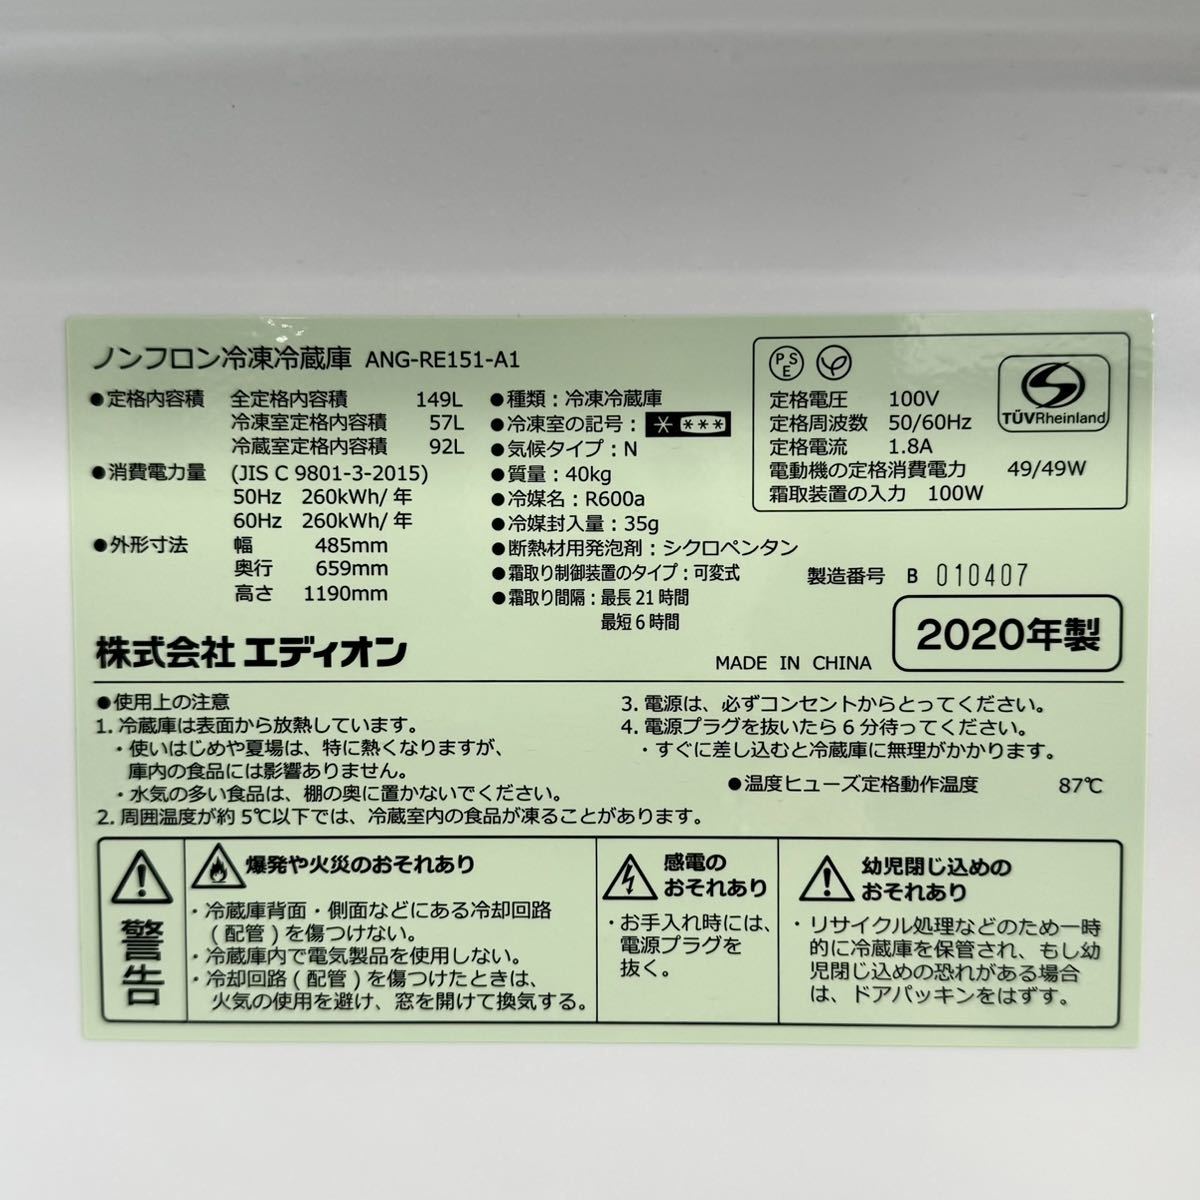 [. сделка ] обычная цена 59,800 иен *e angle(e Dion )*2020 год производства *149L non фреон рефрижератор рефрижератор * зеленый *ANG-RE151-A1